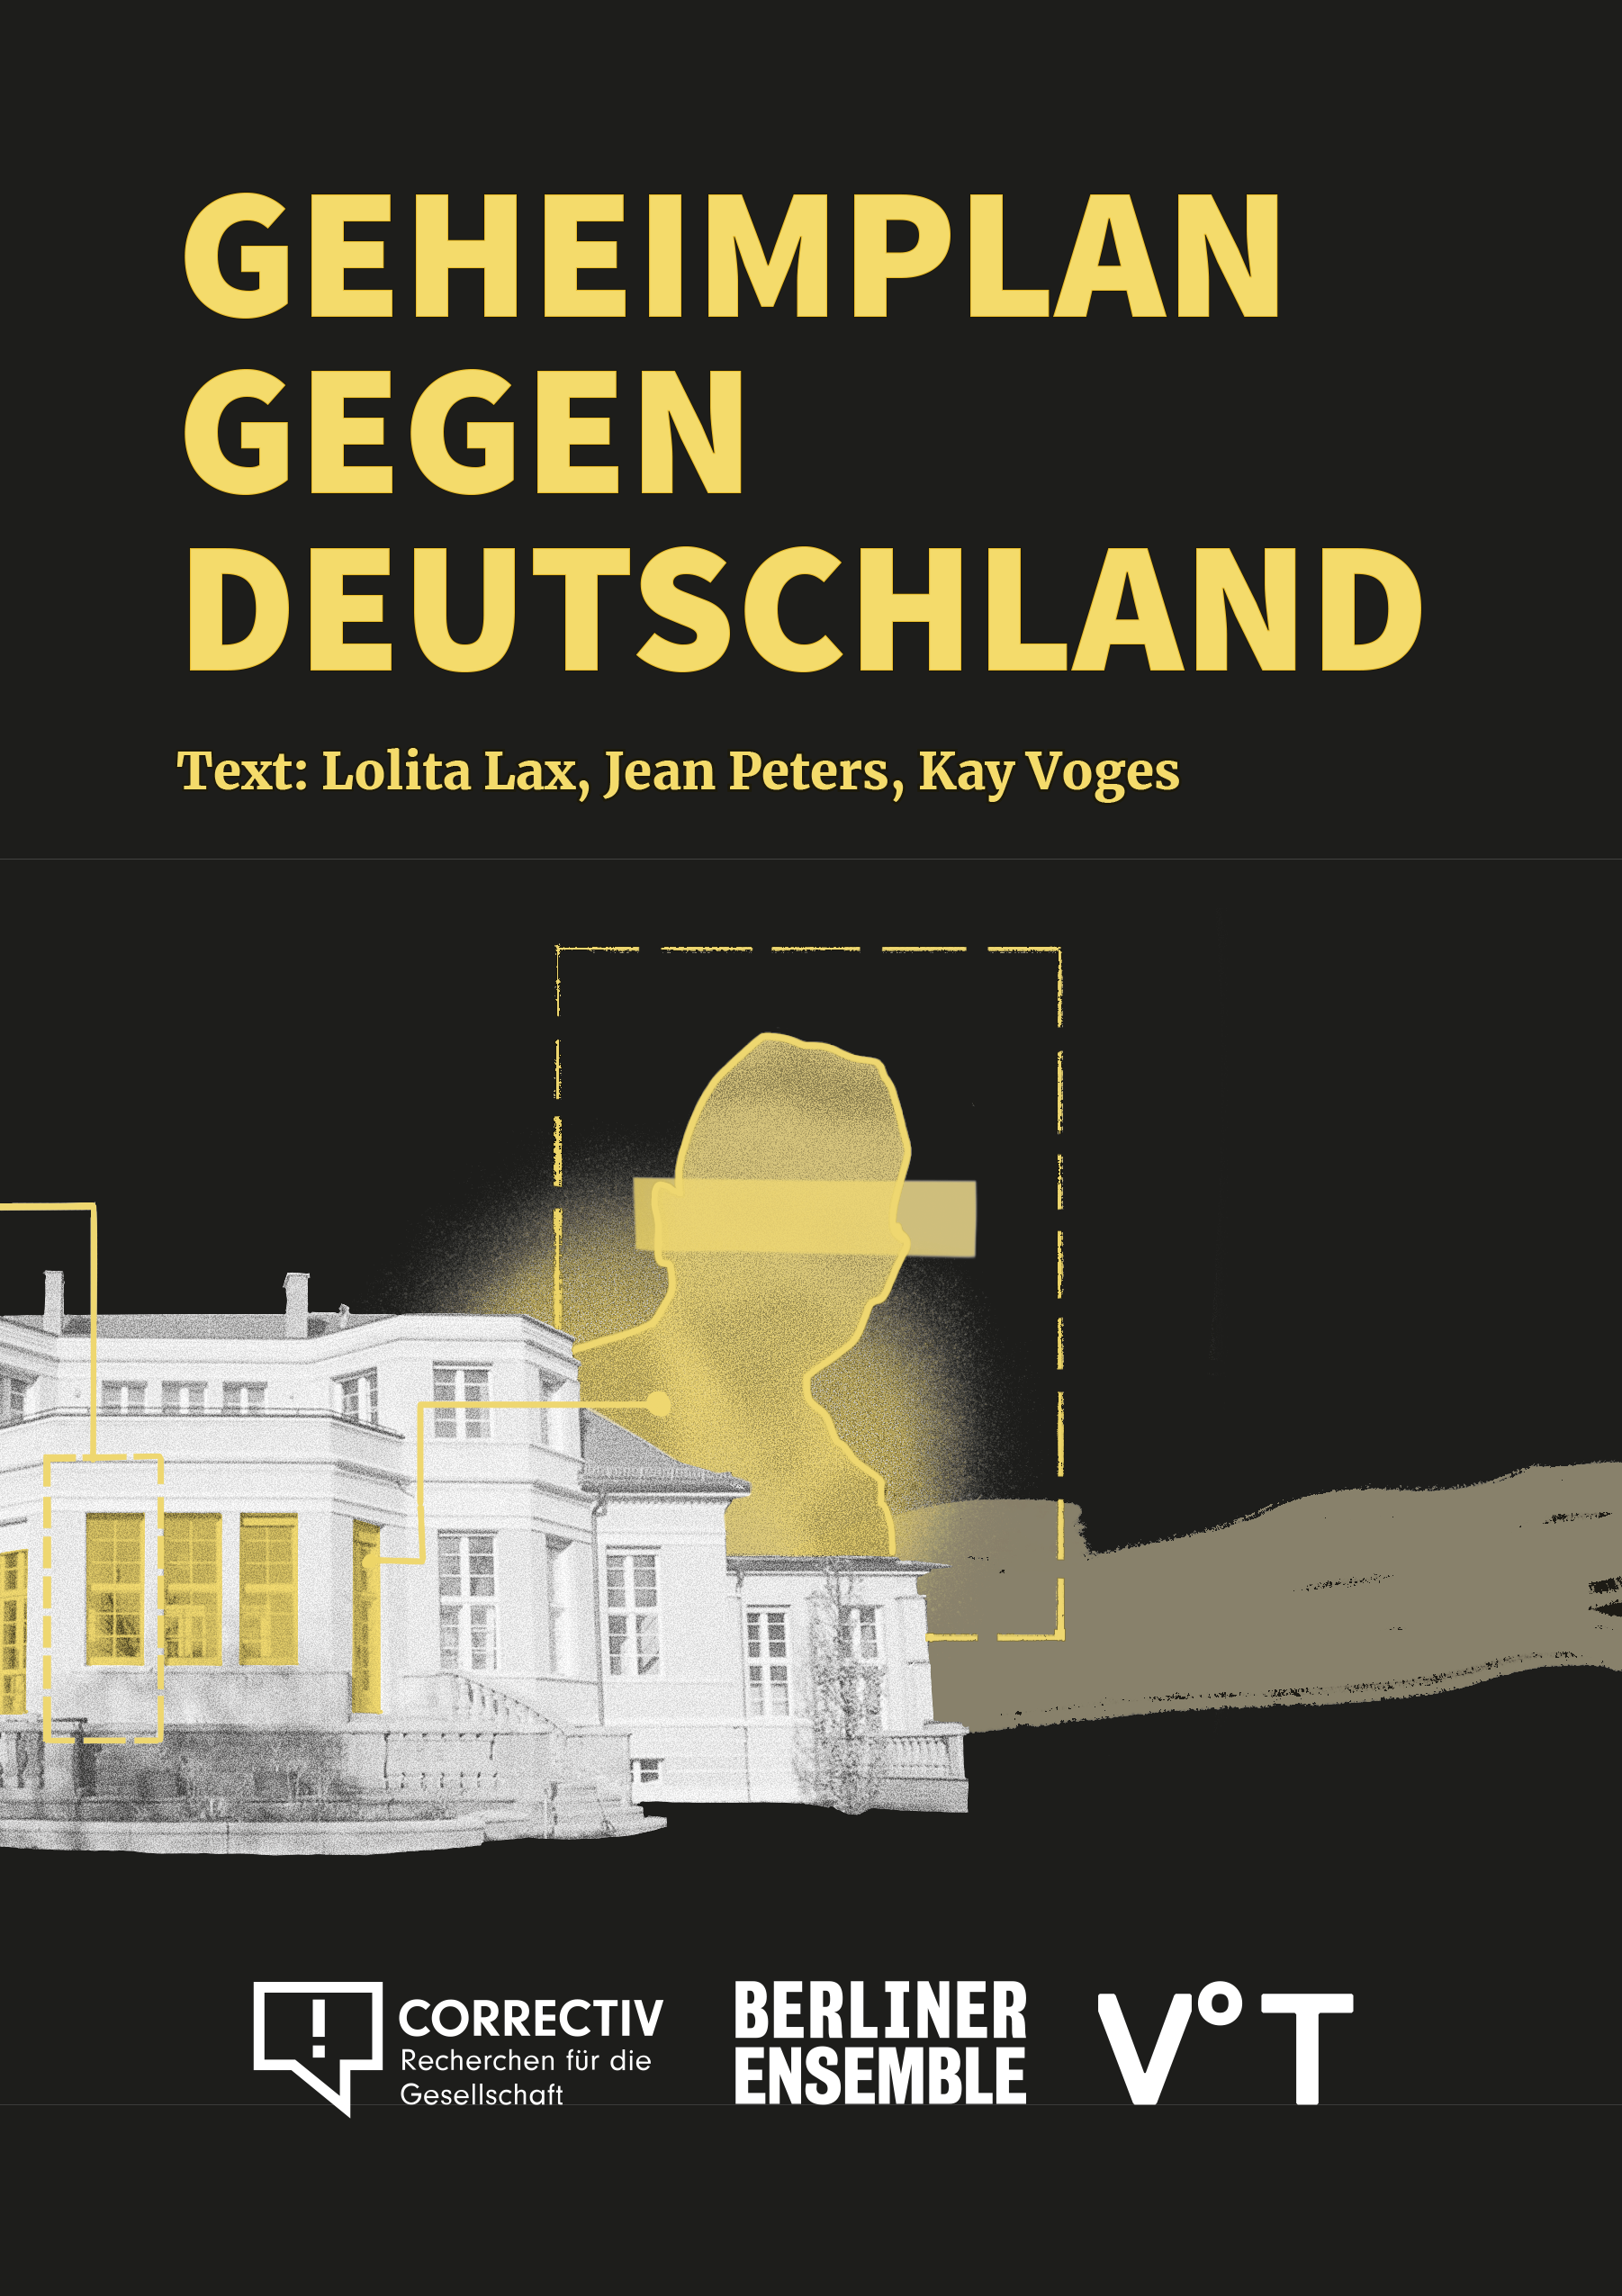 Geheimplan gegen Deutschland - Inszenierung der szenischen Lesung von Kay Voges